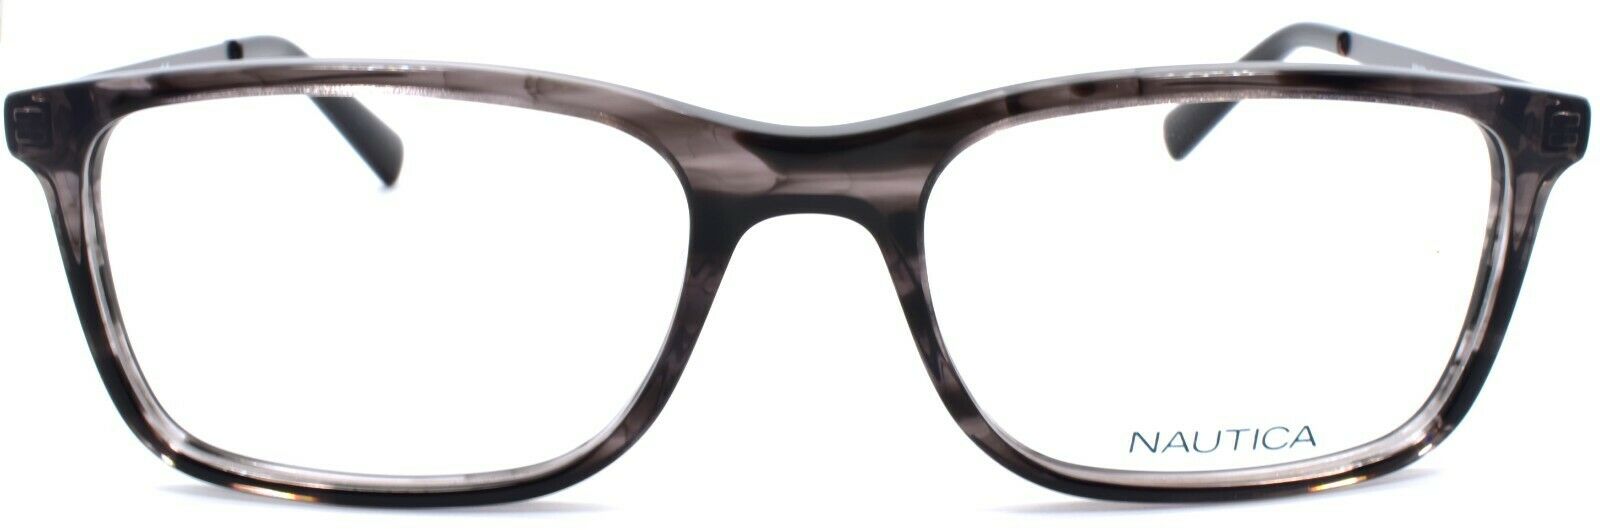 2-Nautica N8153 015 Men's Eyeglasses Frames 56-19-140 Dark Grey Marble-688940463217-IKSpecs